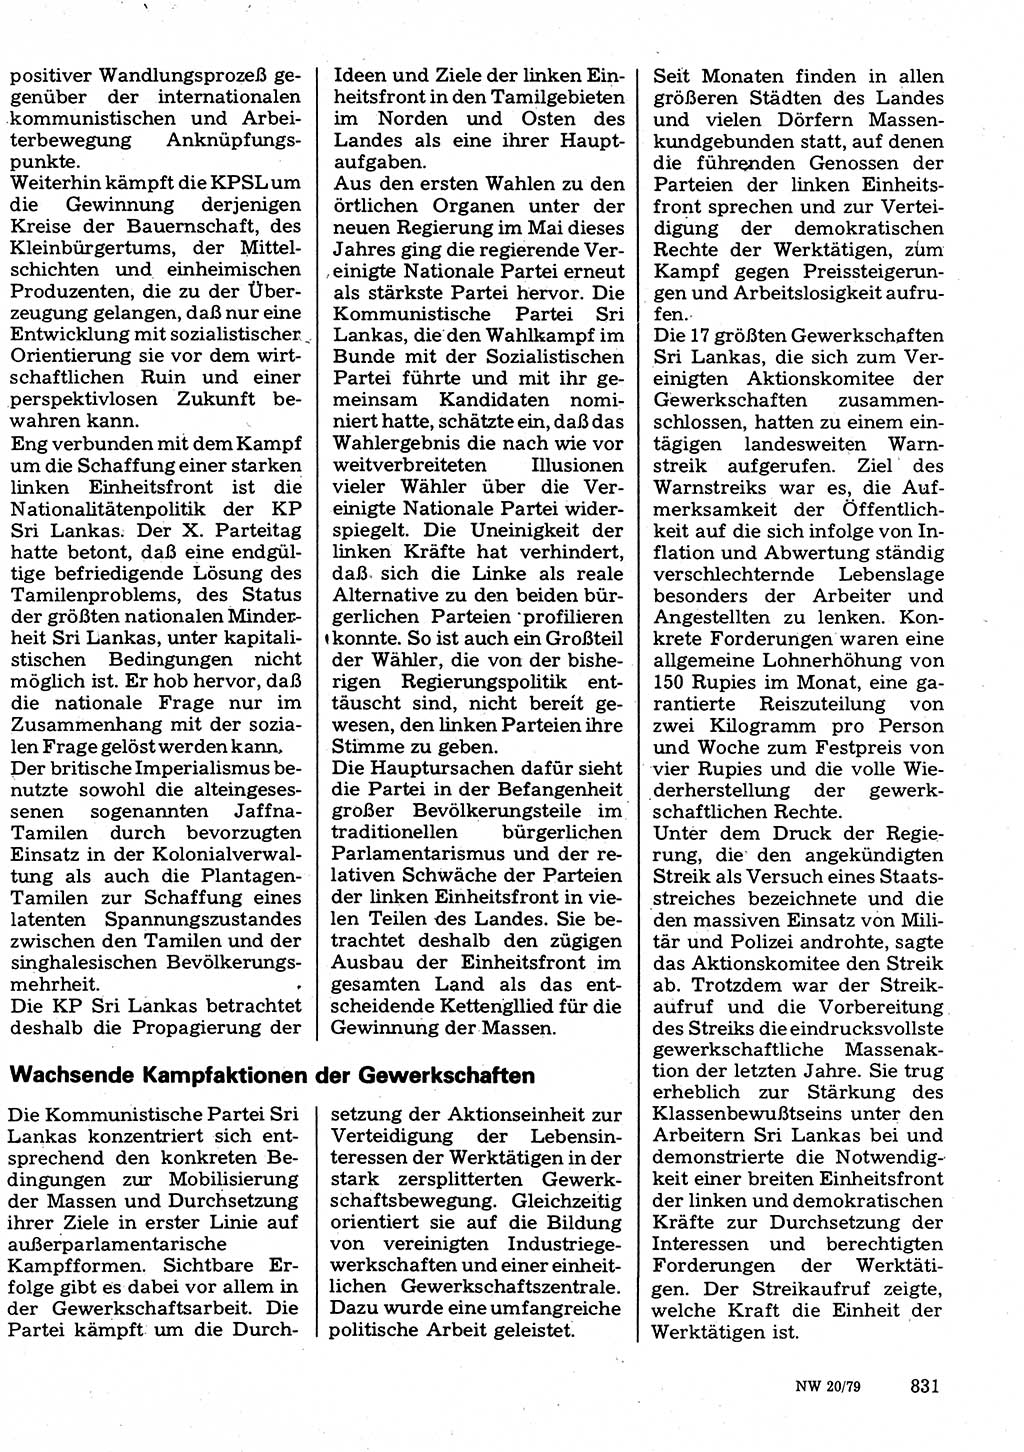 Neuer Weg (NW), Organ des Zentralkomitees (ZK) der SED (Sozialistische Einheitspartei Deutschlands) für Fragen des Parteilebens, 34. Jahrgang [Deutsche Demokratische Republik (DDR)] 1979, Seite 831 (NW ZK SED DDR 1979, S. 831)